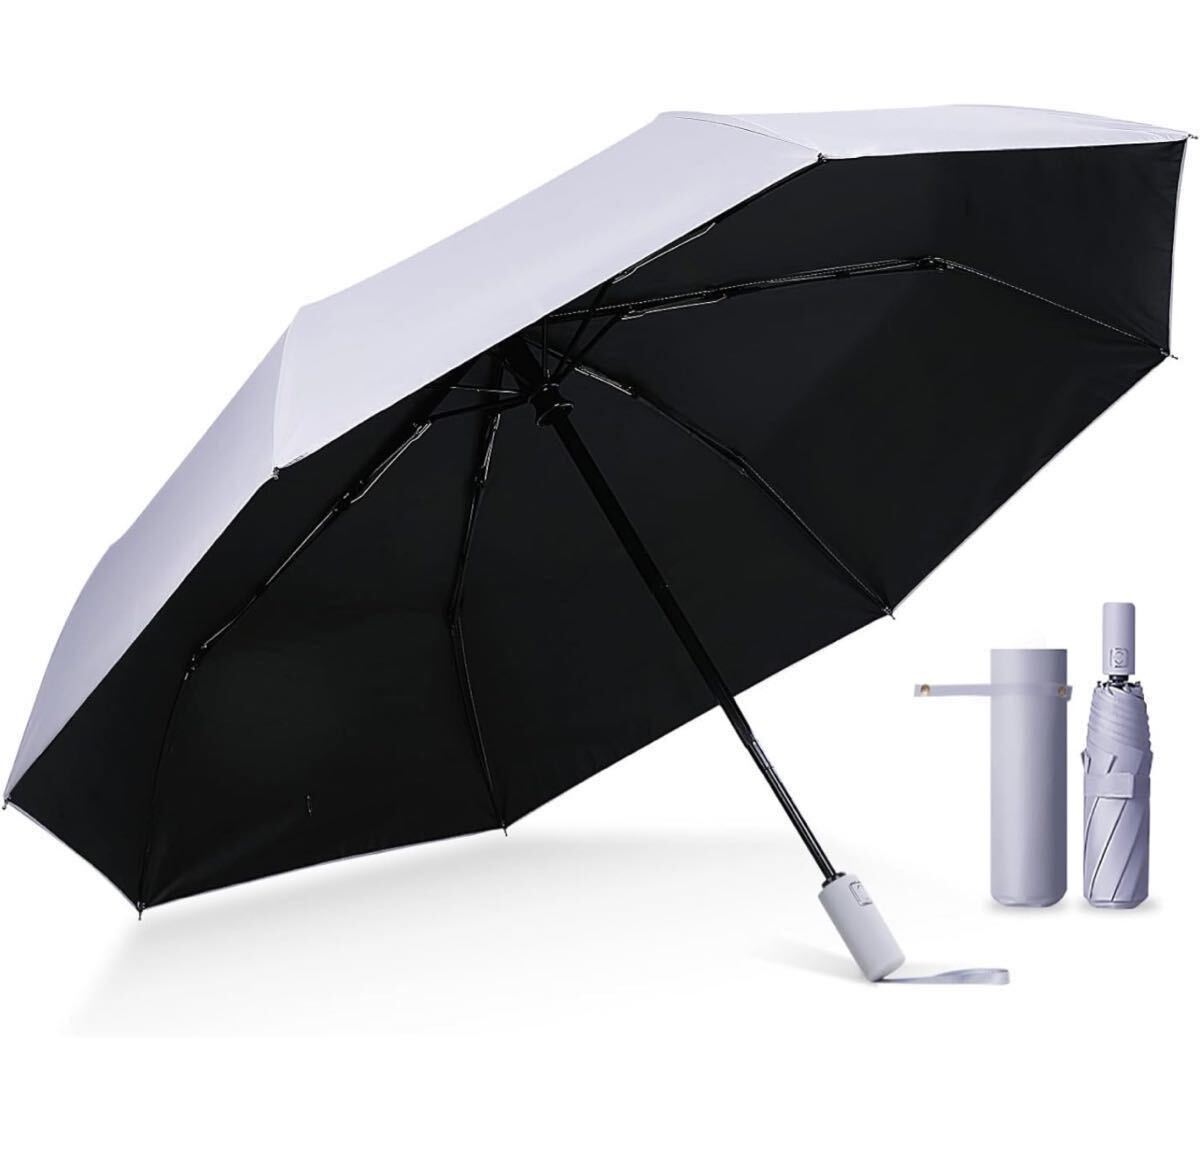 AB-4☆ 国内機関UVカット率100%折りたたみ傘 完全遮光 晴雨兼用 男女兼用 ワンタッチ自動開閉 ザクラシックトーキョー_画像1